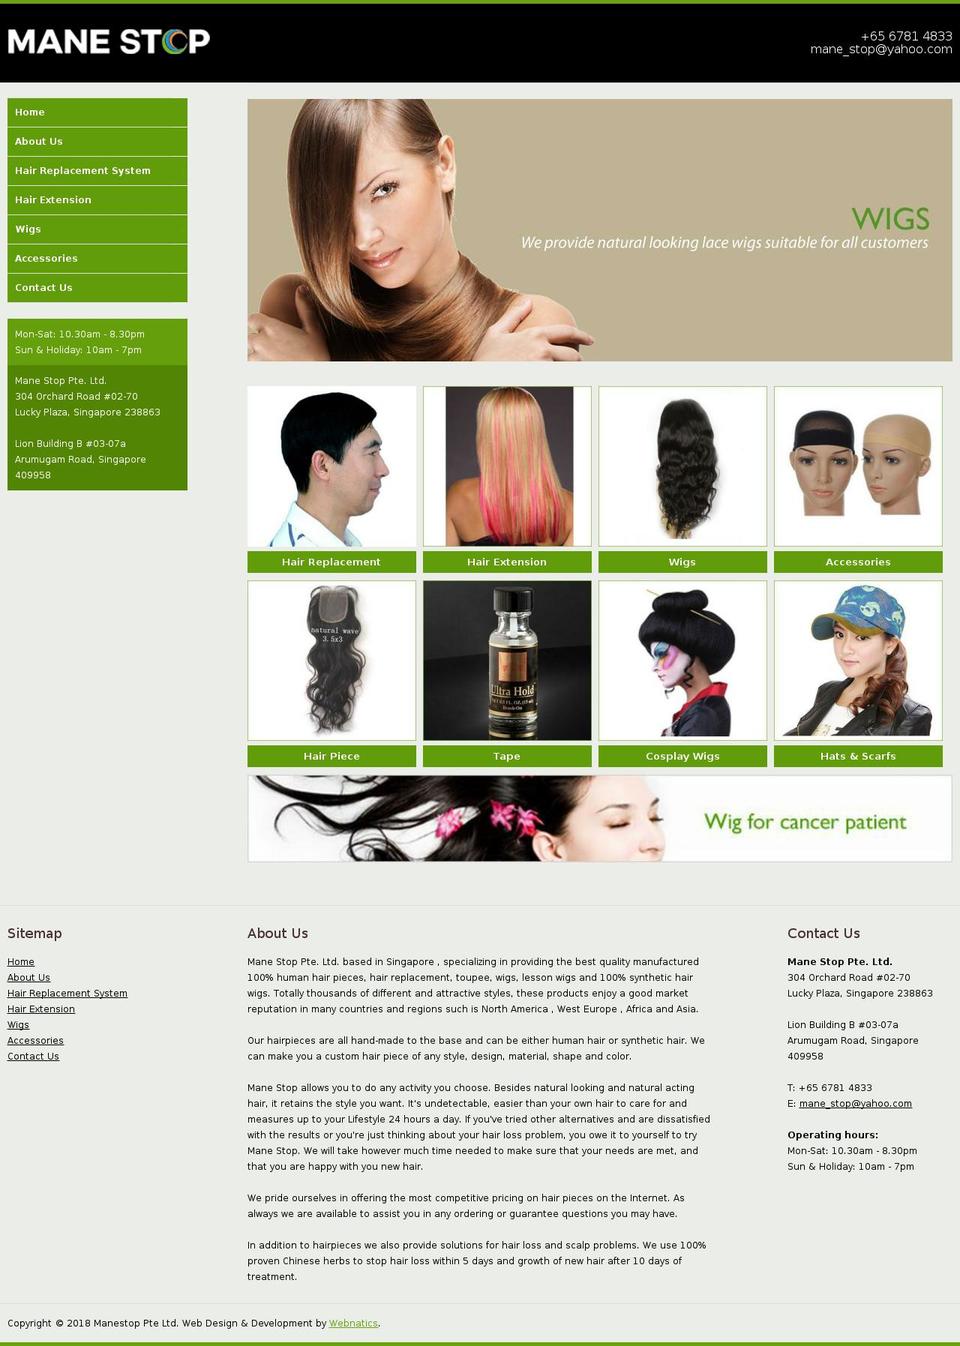 manestop.com.sg shopify website screenshot